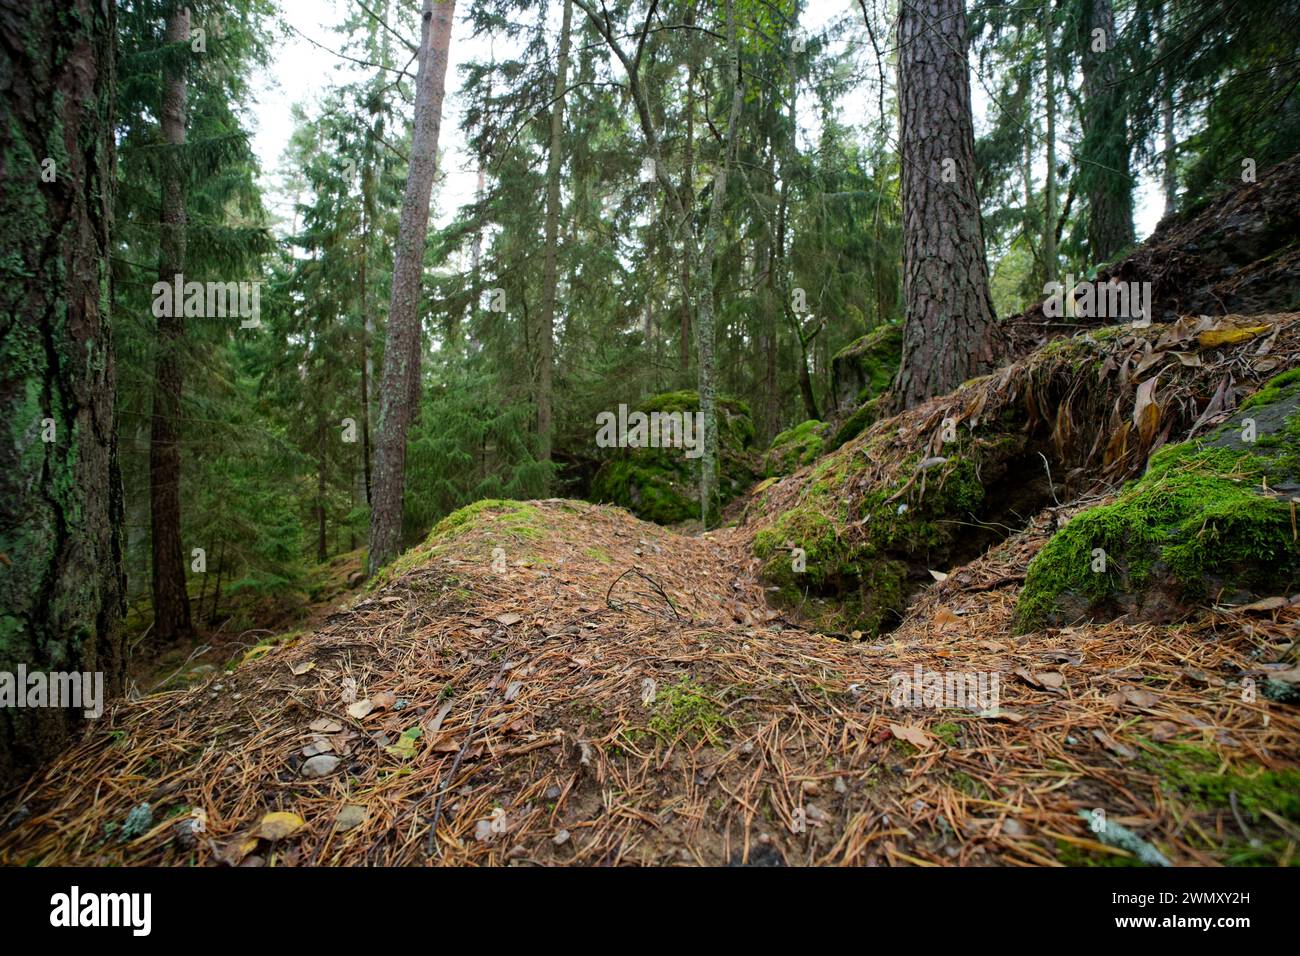 Sett du blaireau européen (Meles meles) dans une forêt, sauvage Finlande Banque D'Images